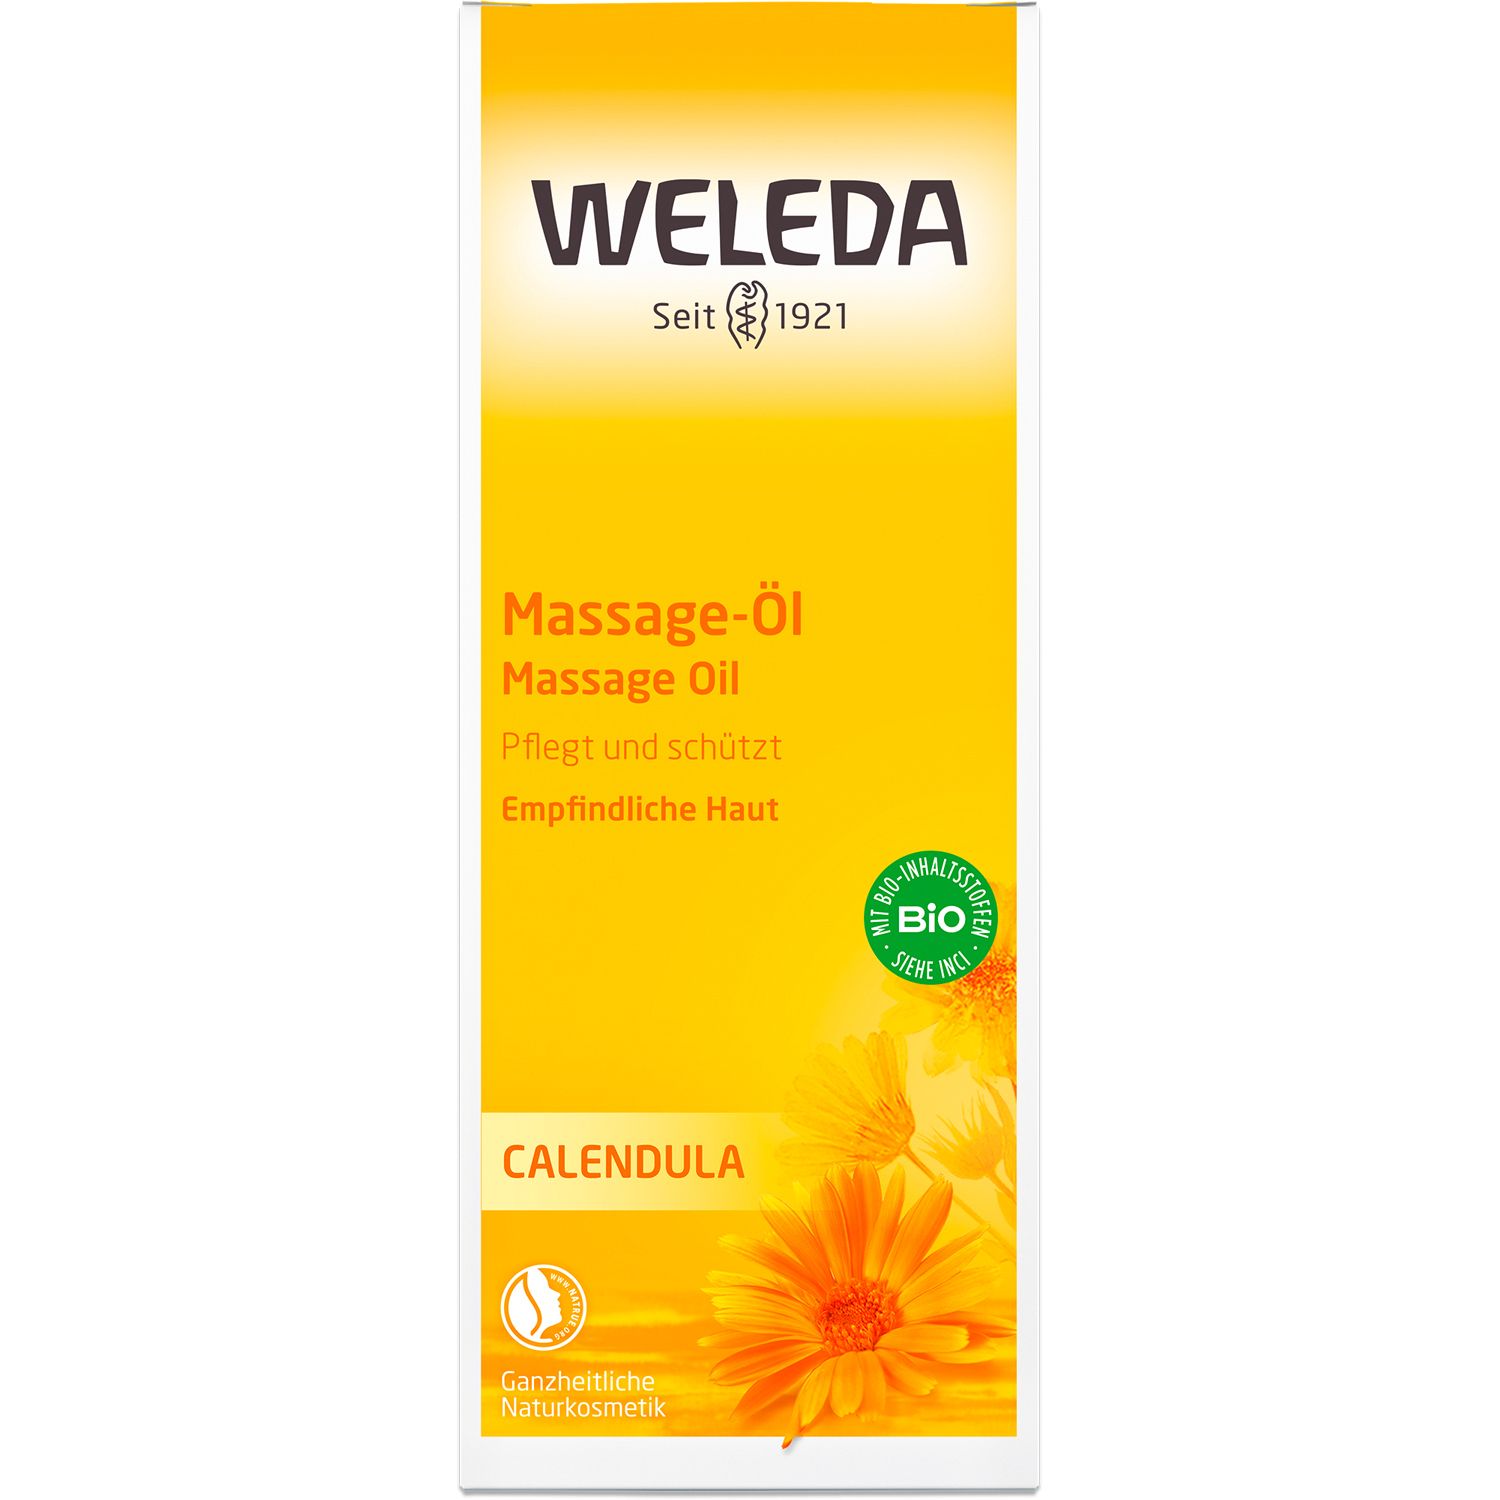 Weleda Massageöl Calendula - pflegt und nährt empfindliche Haut, hält sie glatt und geschmeidig